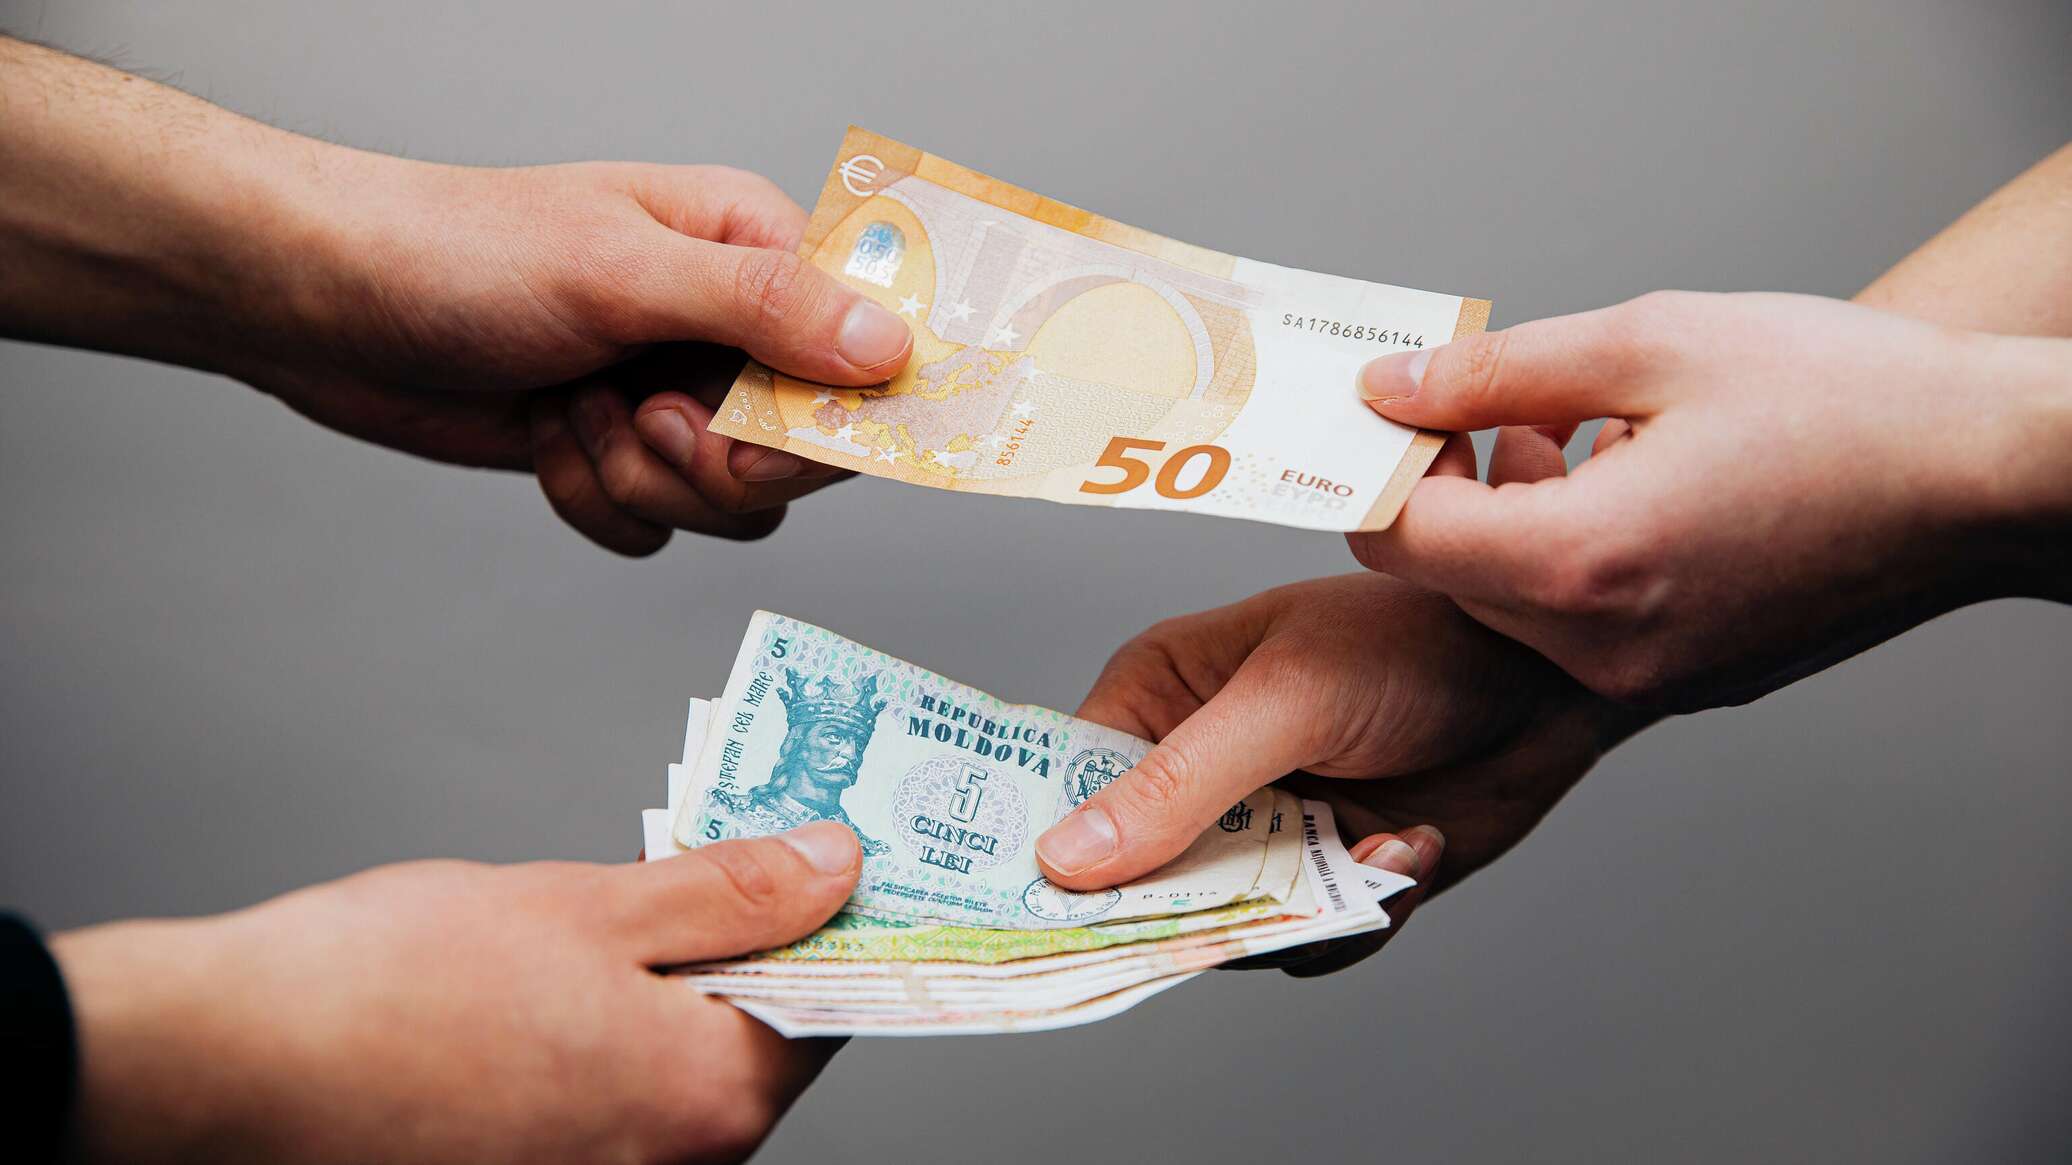 225 долларов в рублях. Евро и грн в руках. Доллары в молдавских леях. Национальная валюта Молдавии.